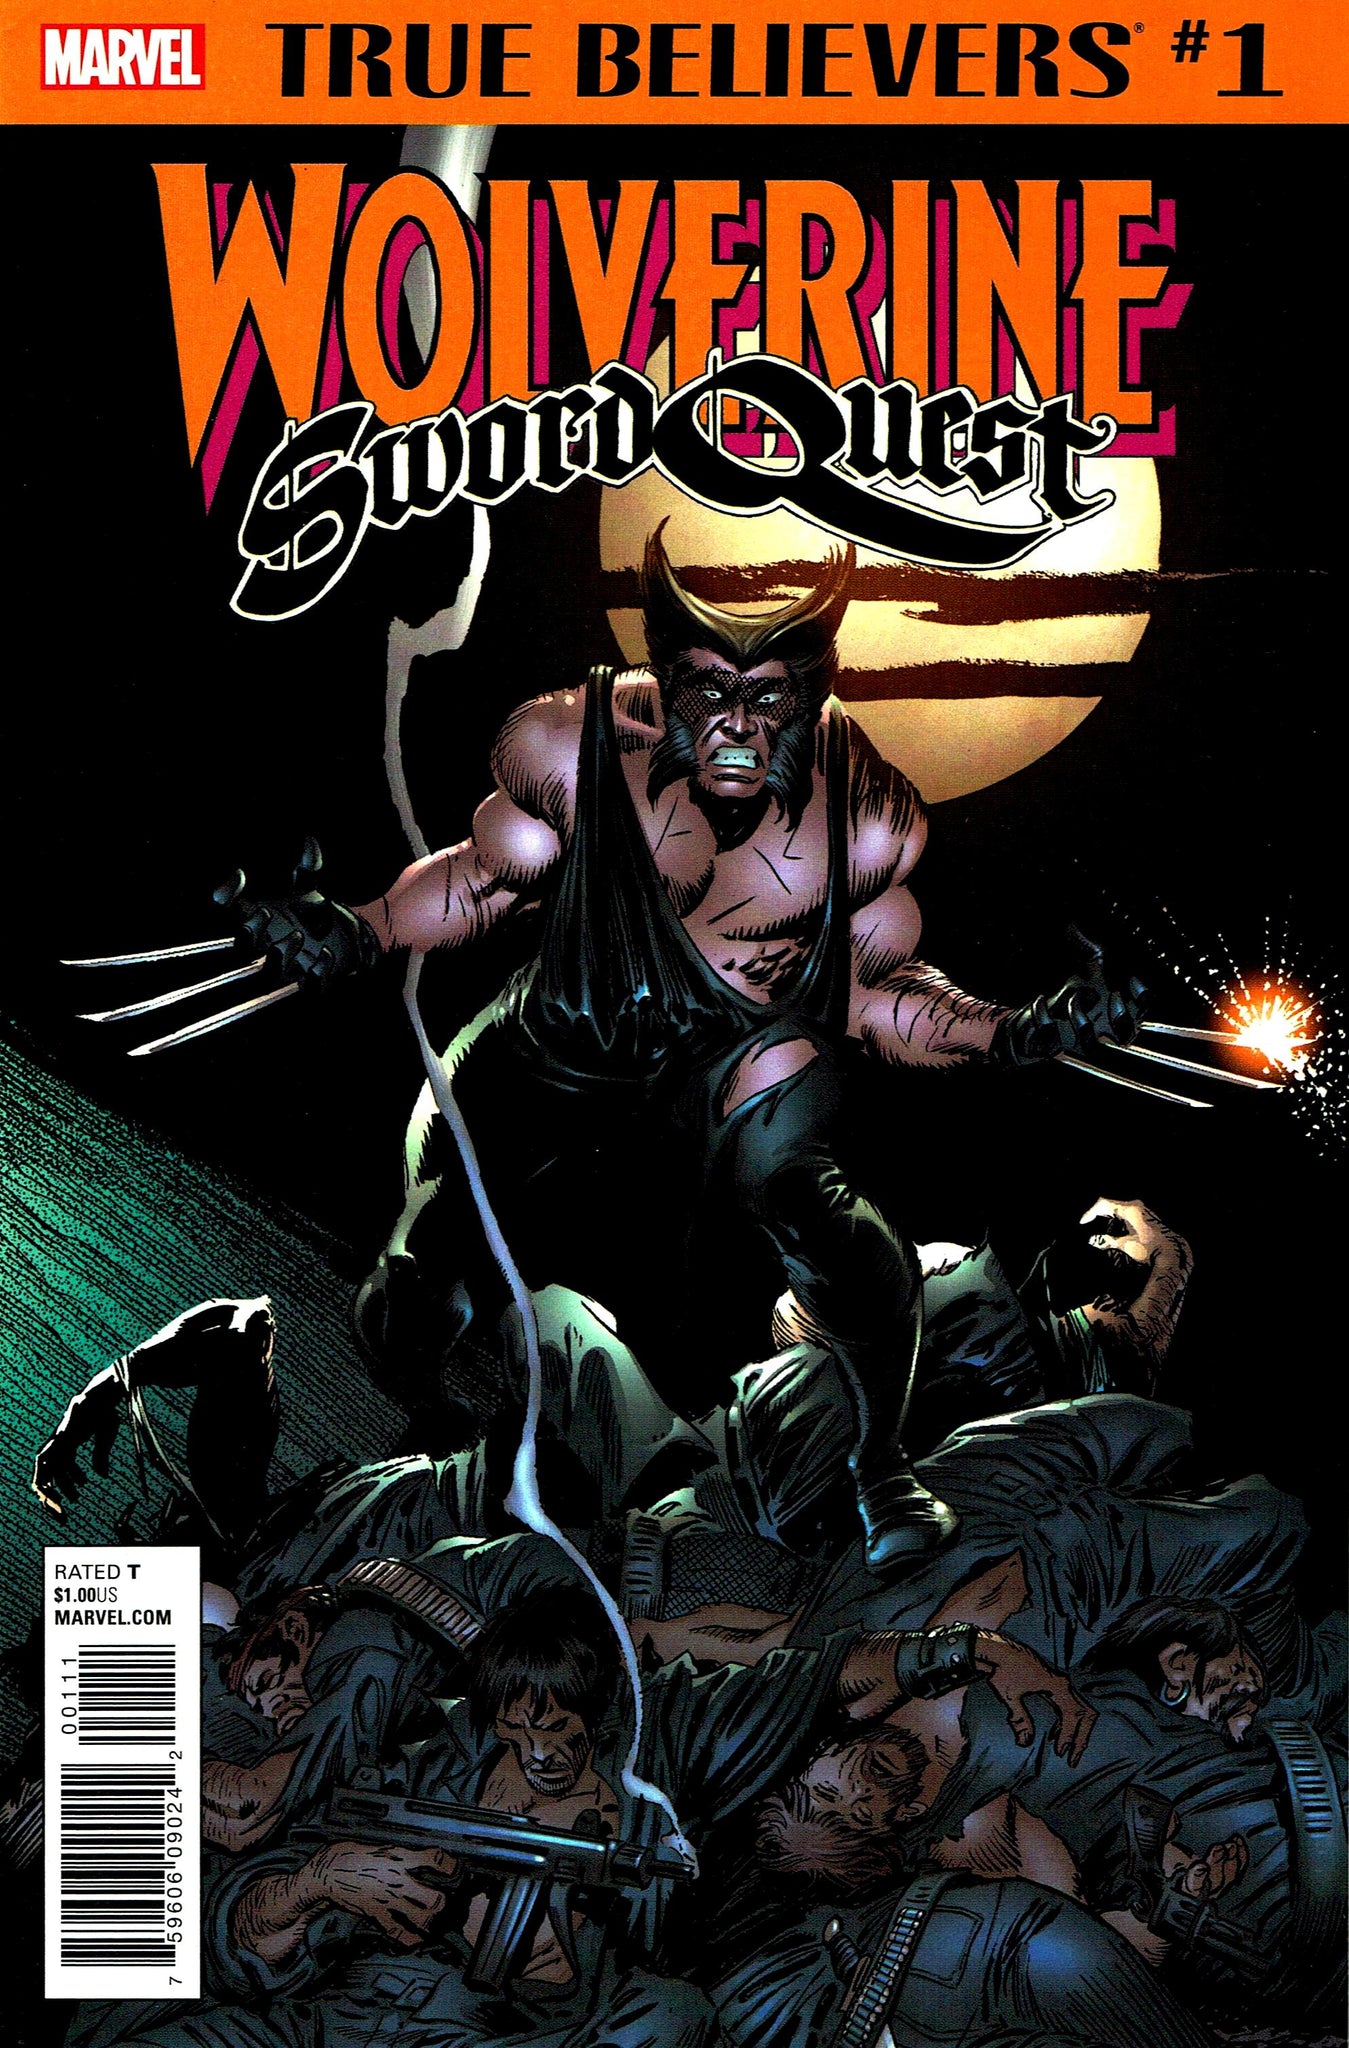 True Believers - Wolverine: Sword Quest #1